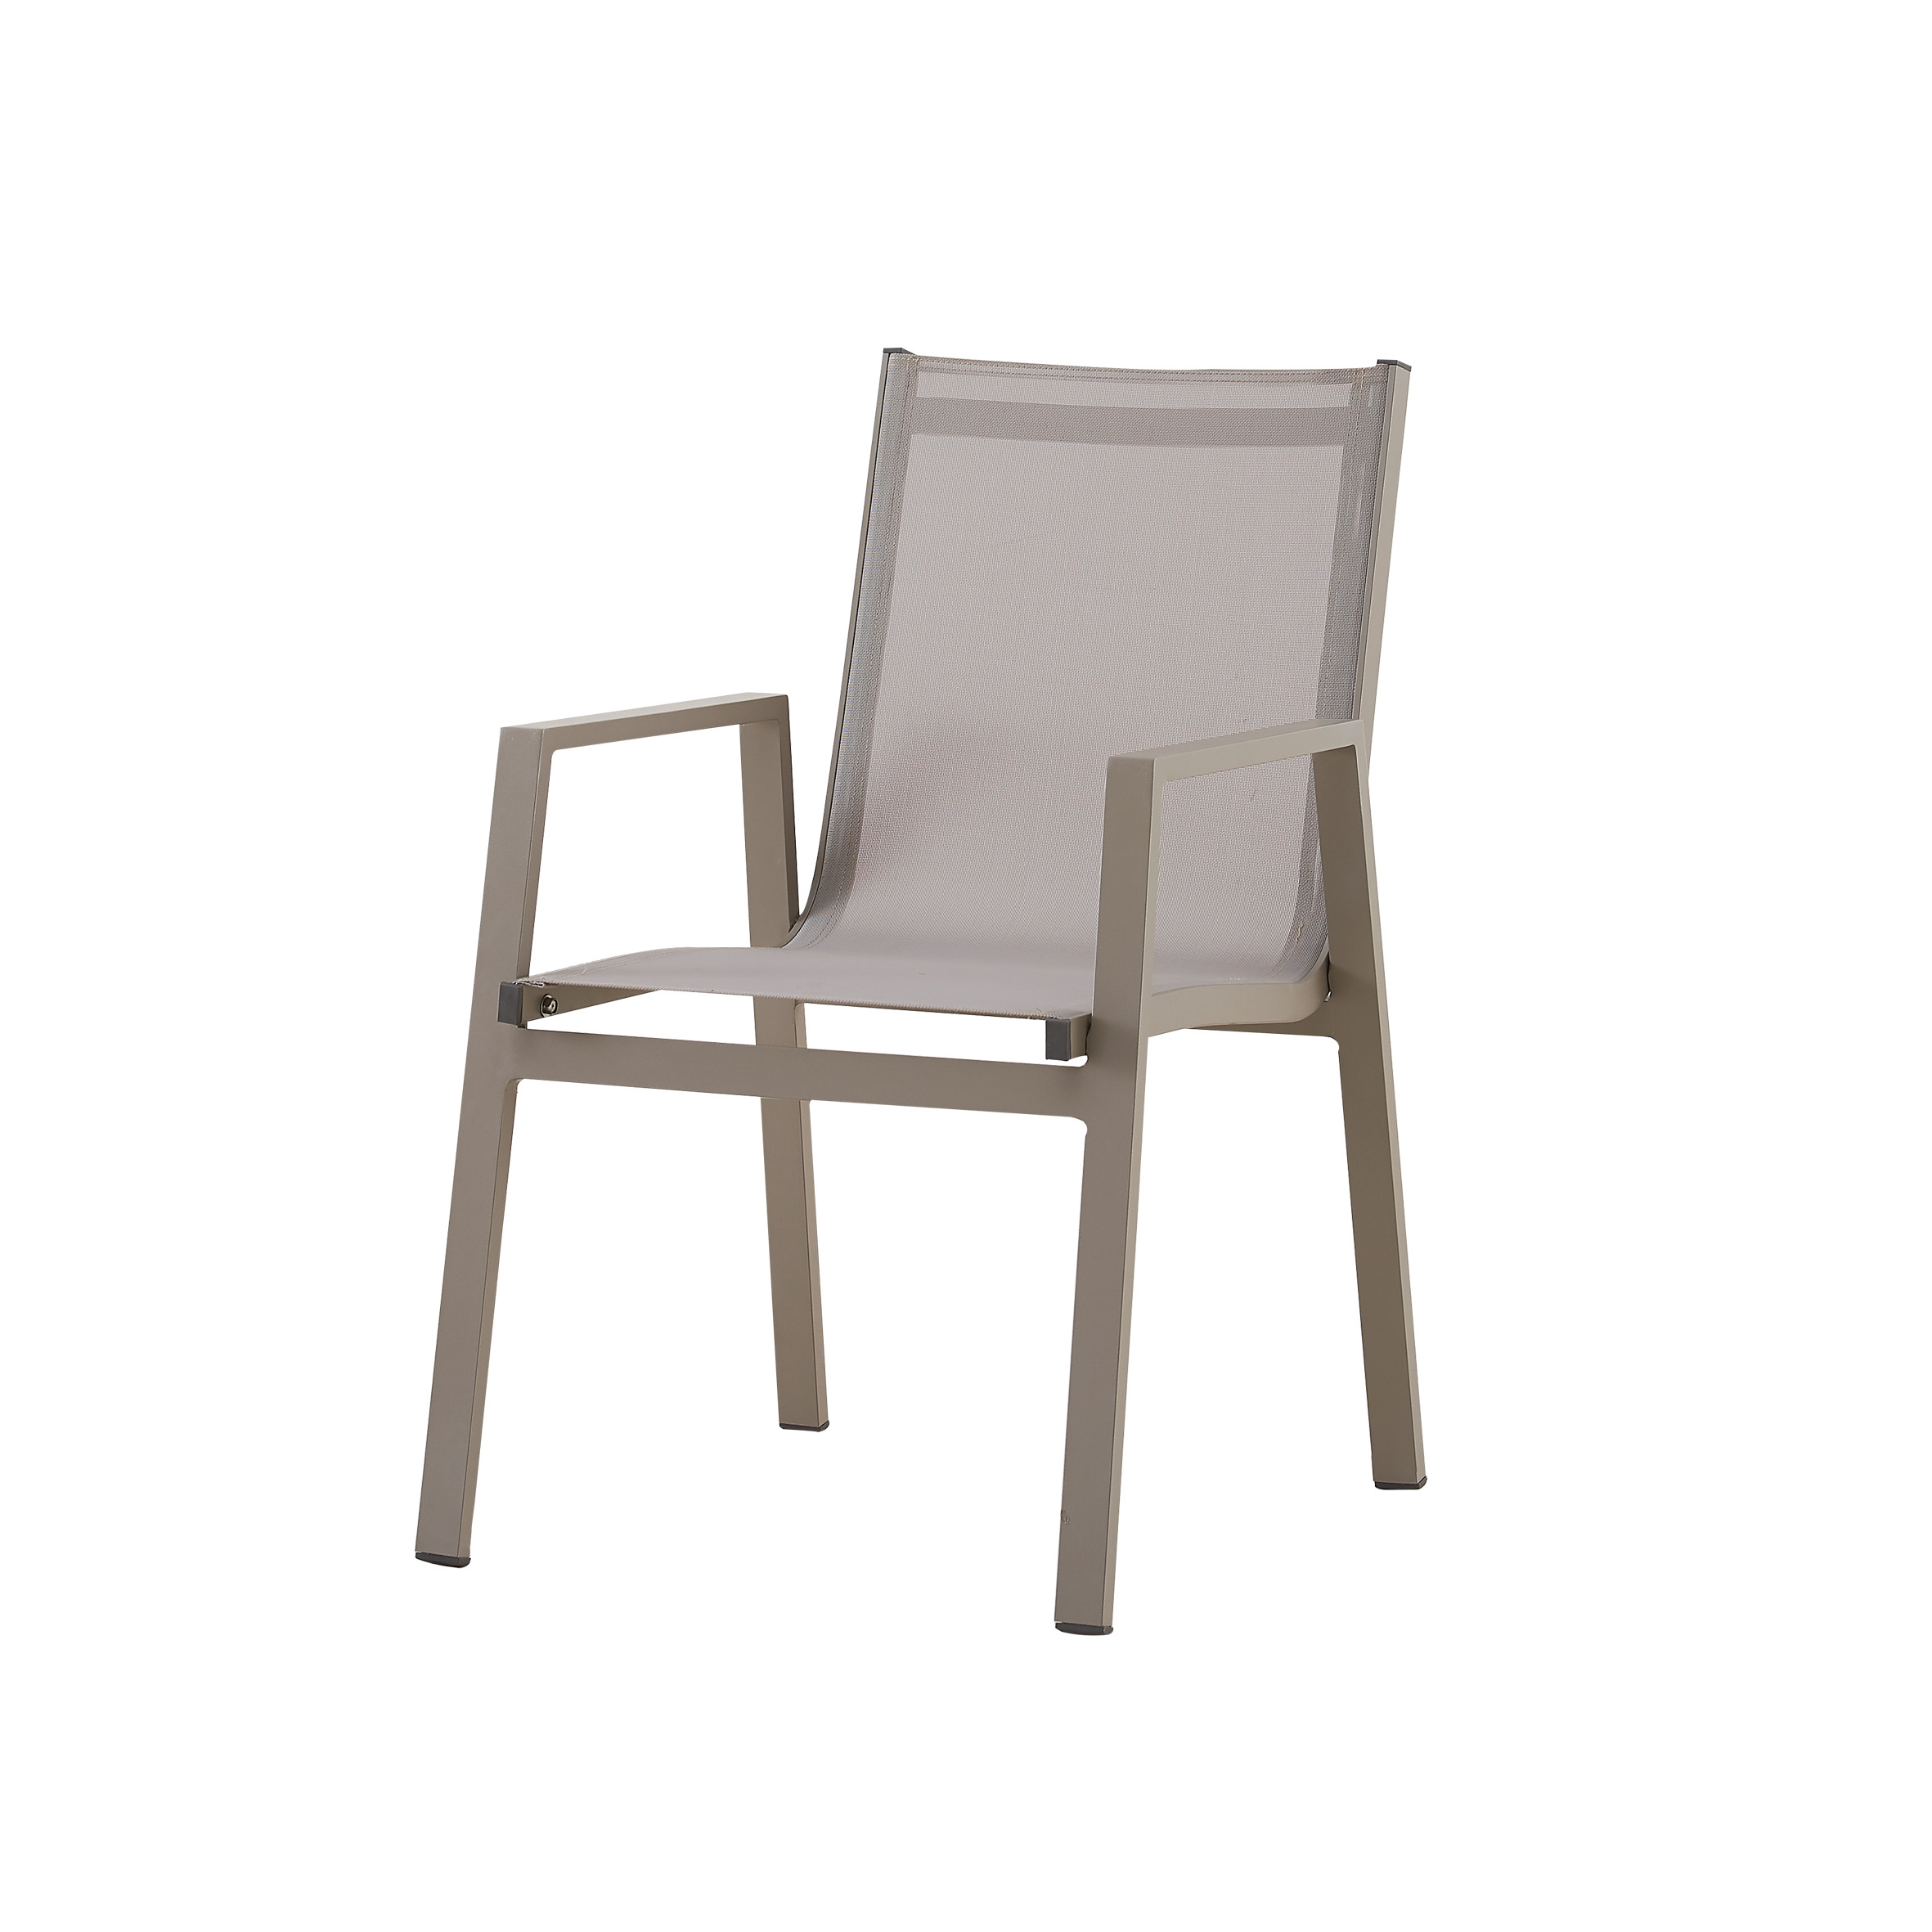 Kar beyazı tekstil yemek sandalyesi S8